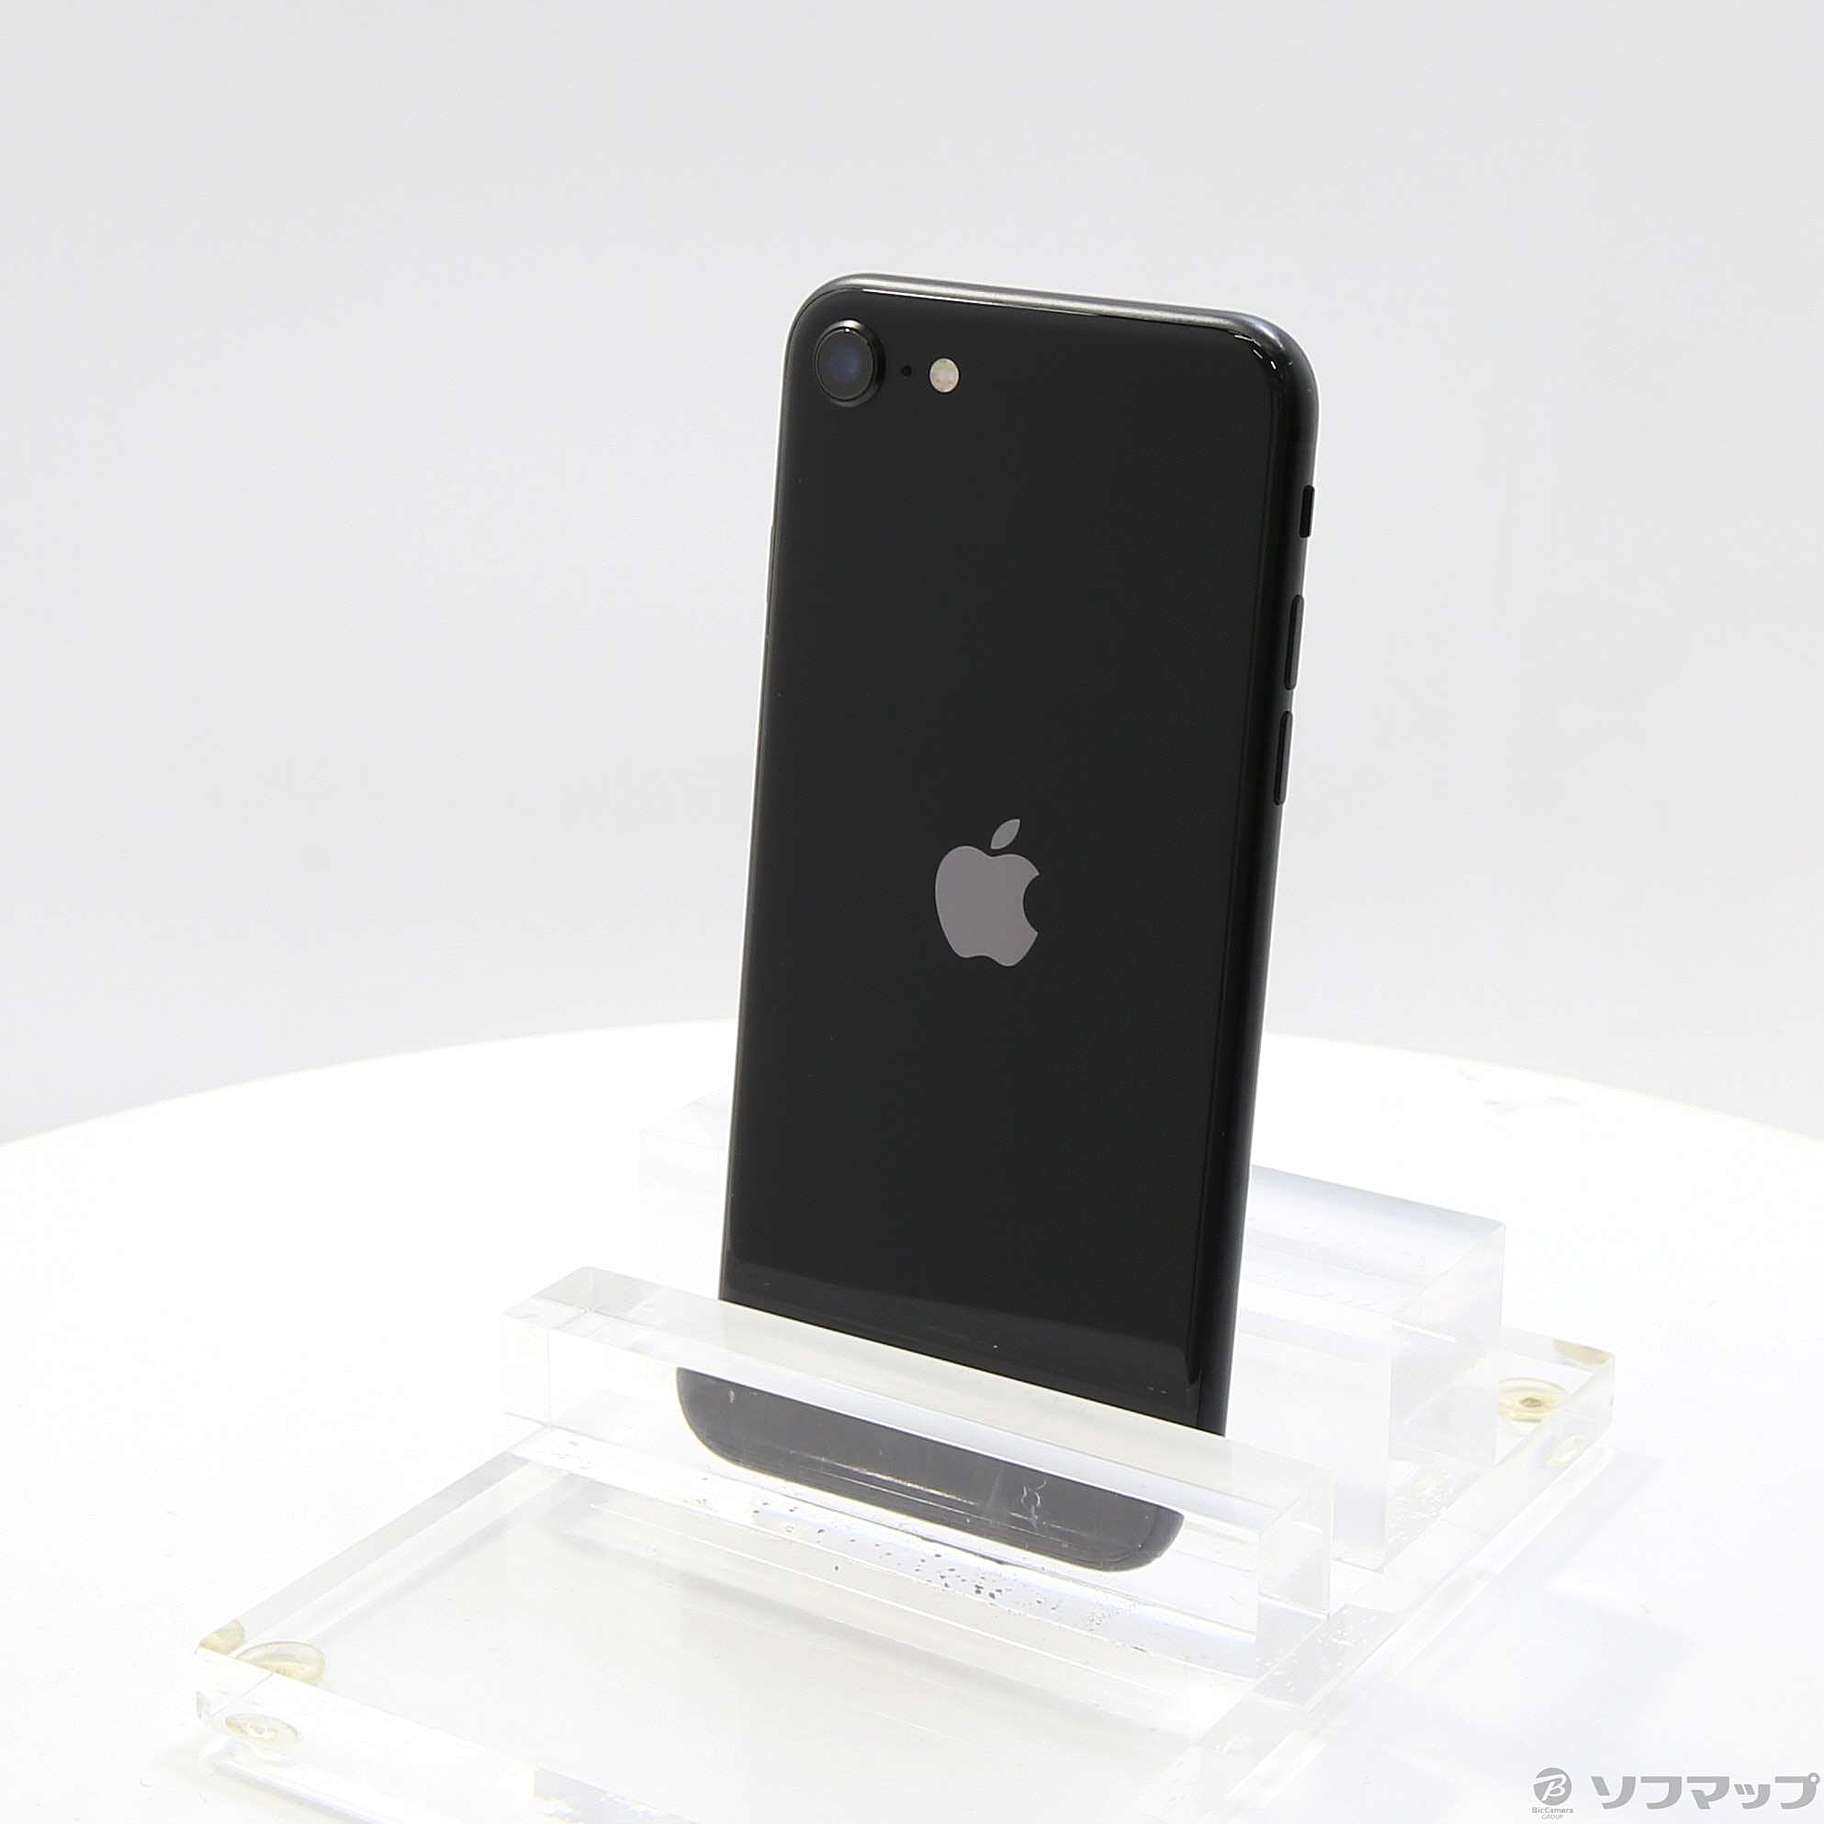 Apple iPhone SE 第2世代 64GB ブラック MHGP 3J/A - スマートフォン ...